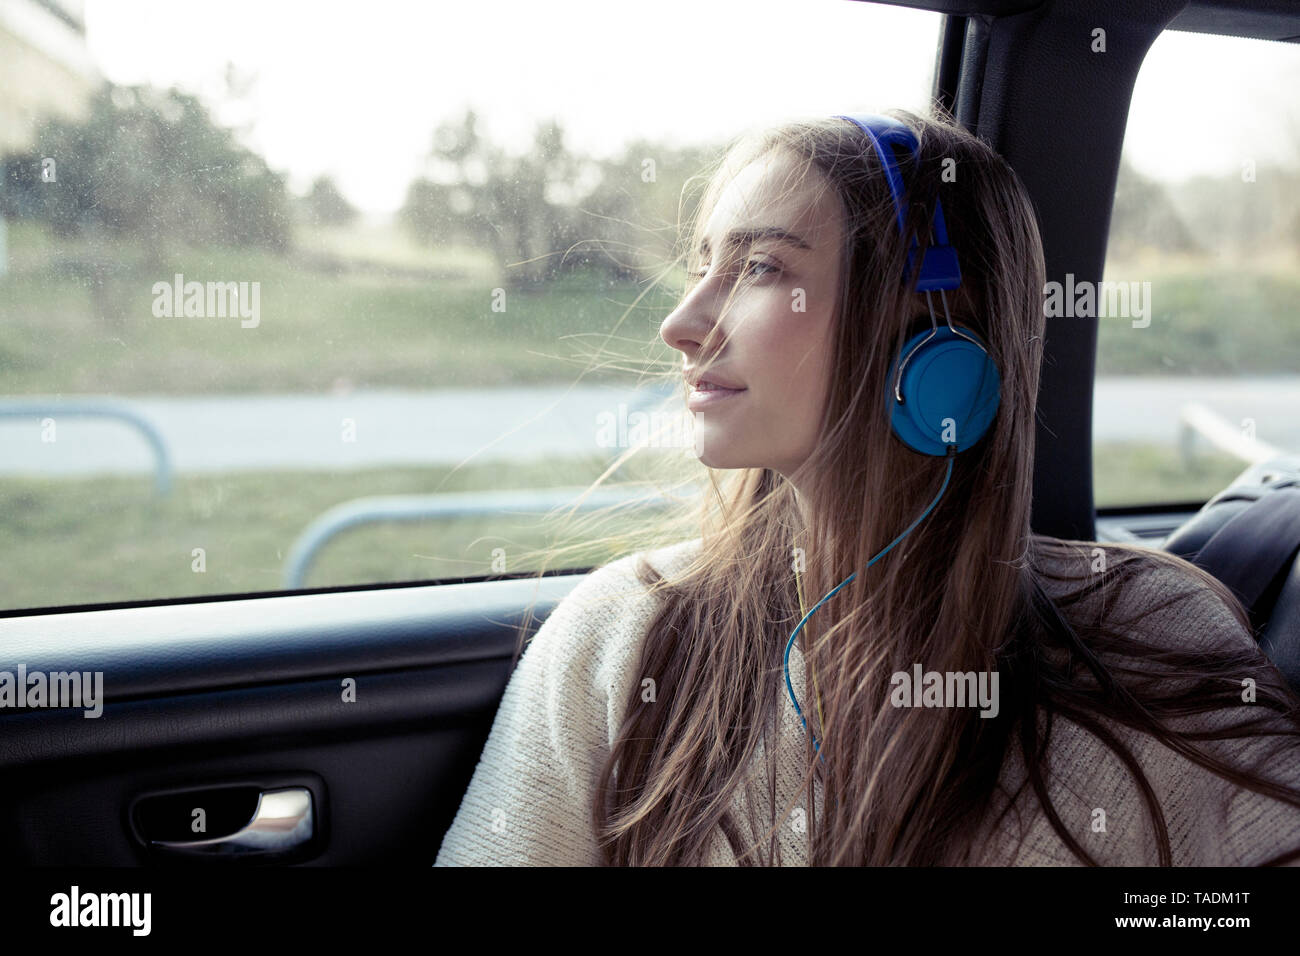 Mujer joven con cabello alborotado en un automóvil usando audífonos Foto de stock